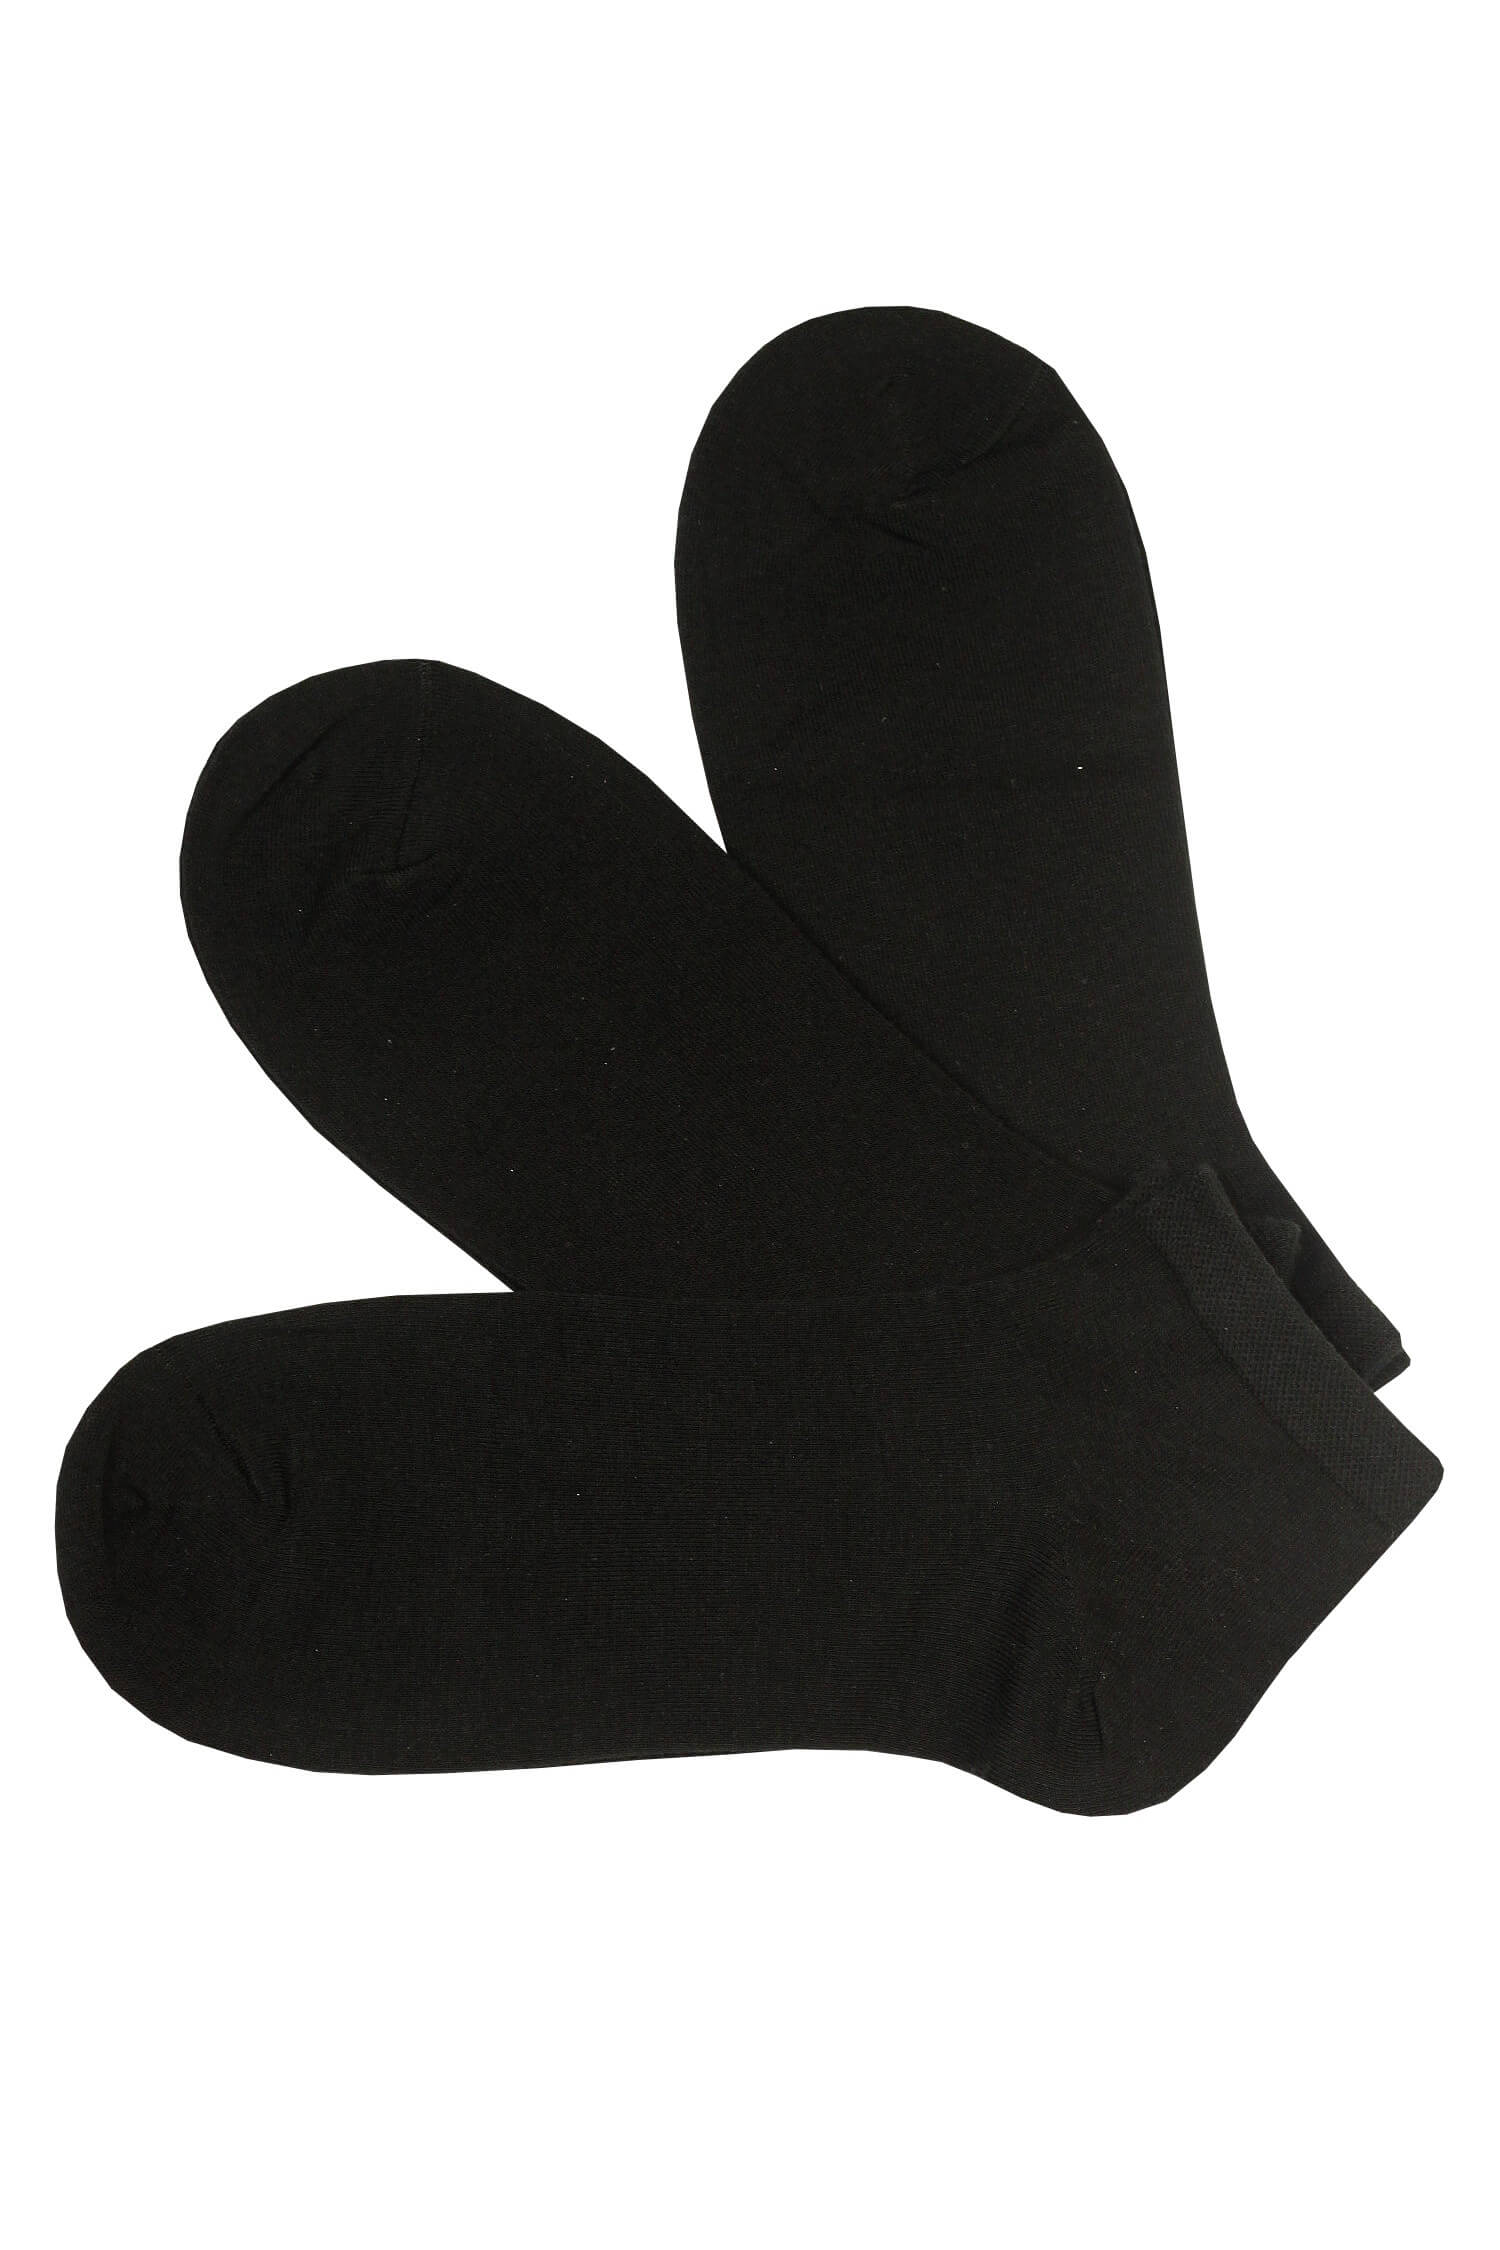 Dámské kotníčkové ponožky EW001C- 3páry 35-38 černá